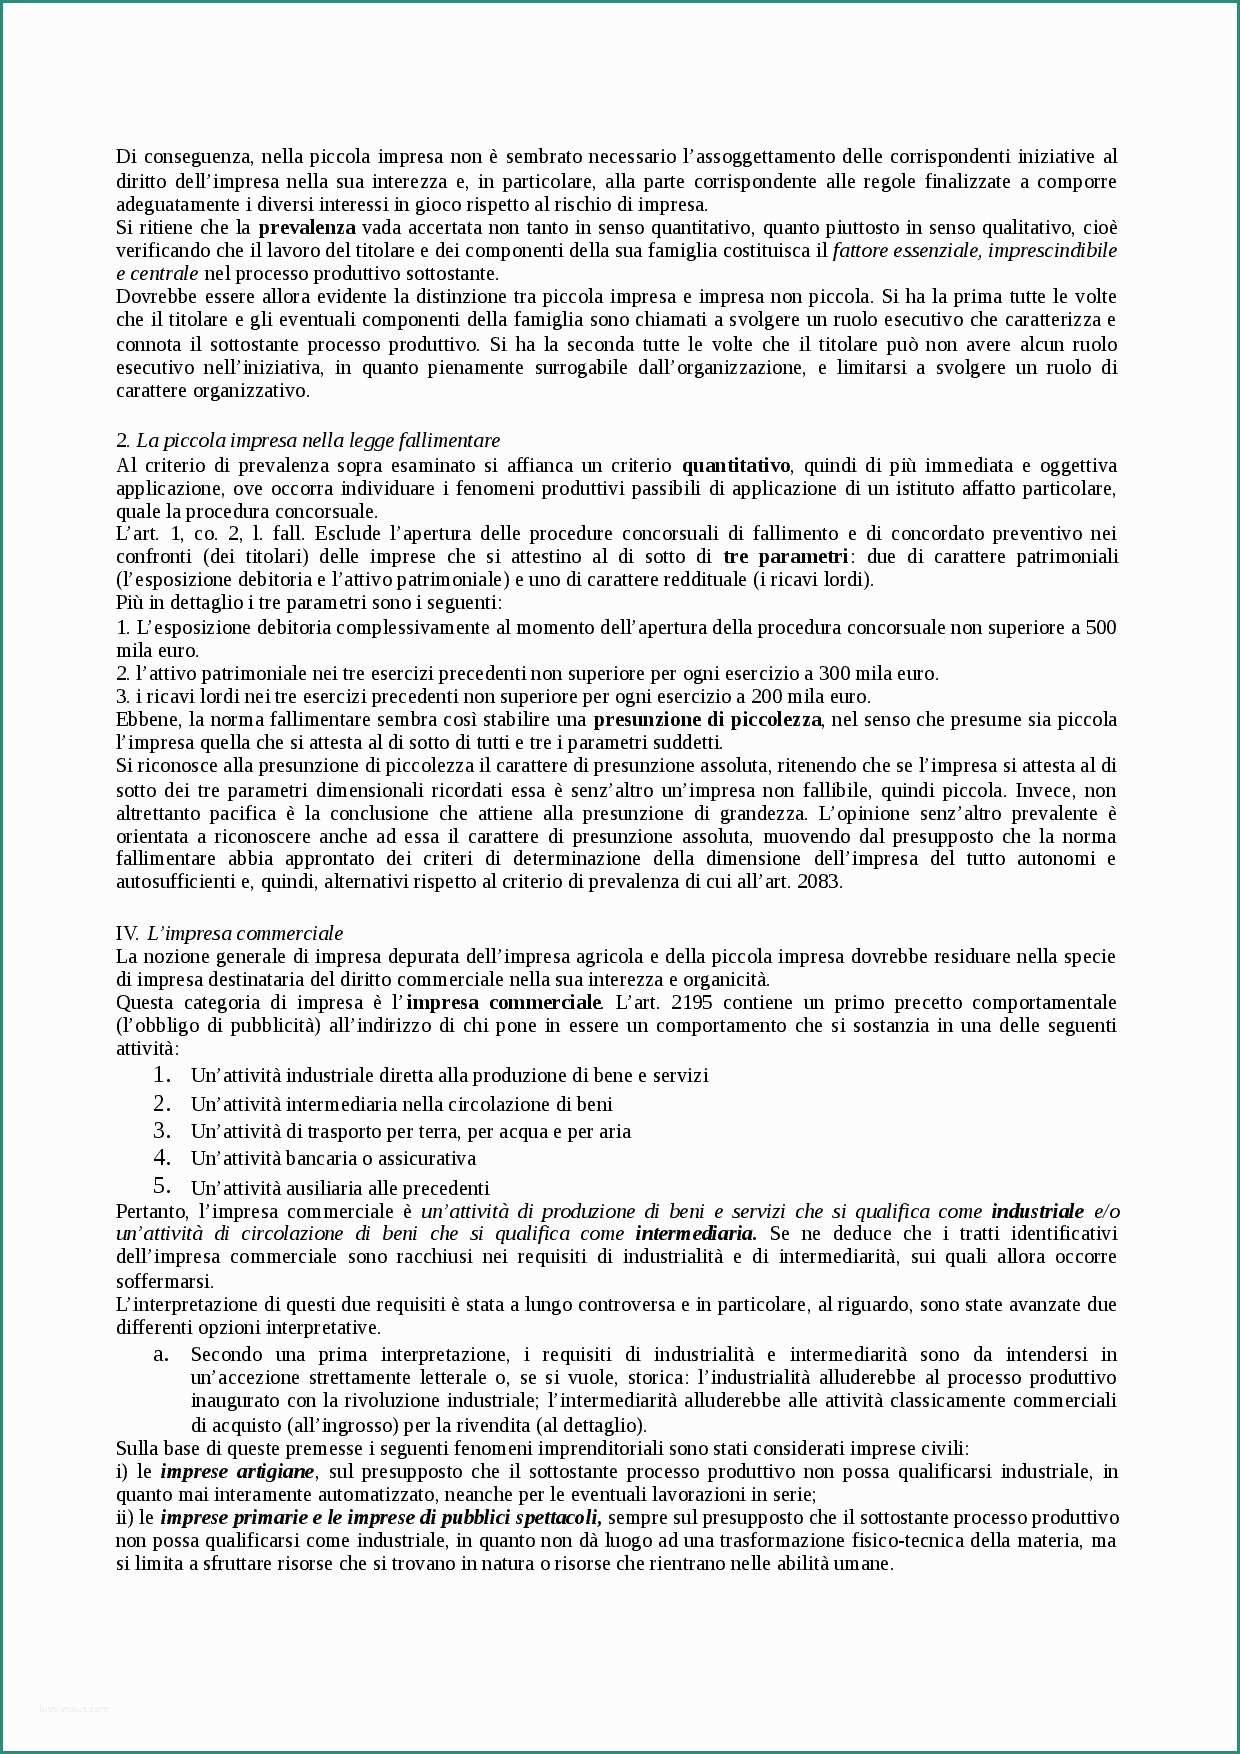 Fiat Panda Consumi Reali E Riassunto Manuale Di Diritto Merciale Cian 2016 Cap 1 19 Docsity